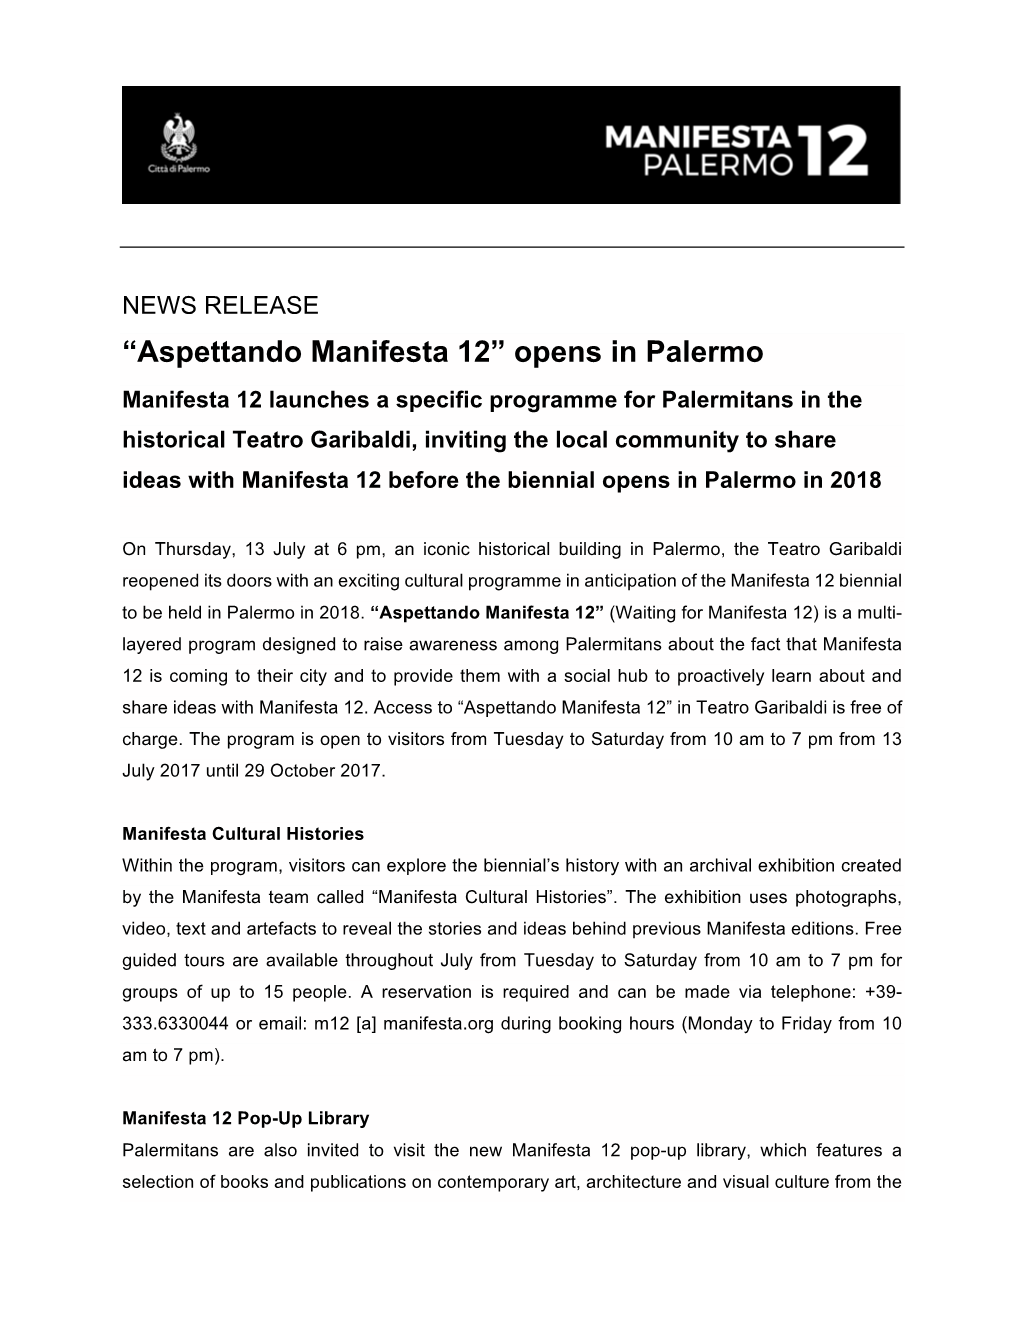 “Aspettando Manifesta 12” Opens in Palermo